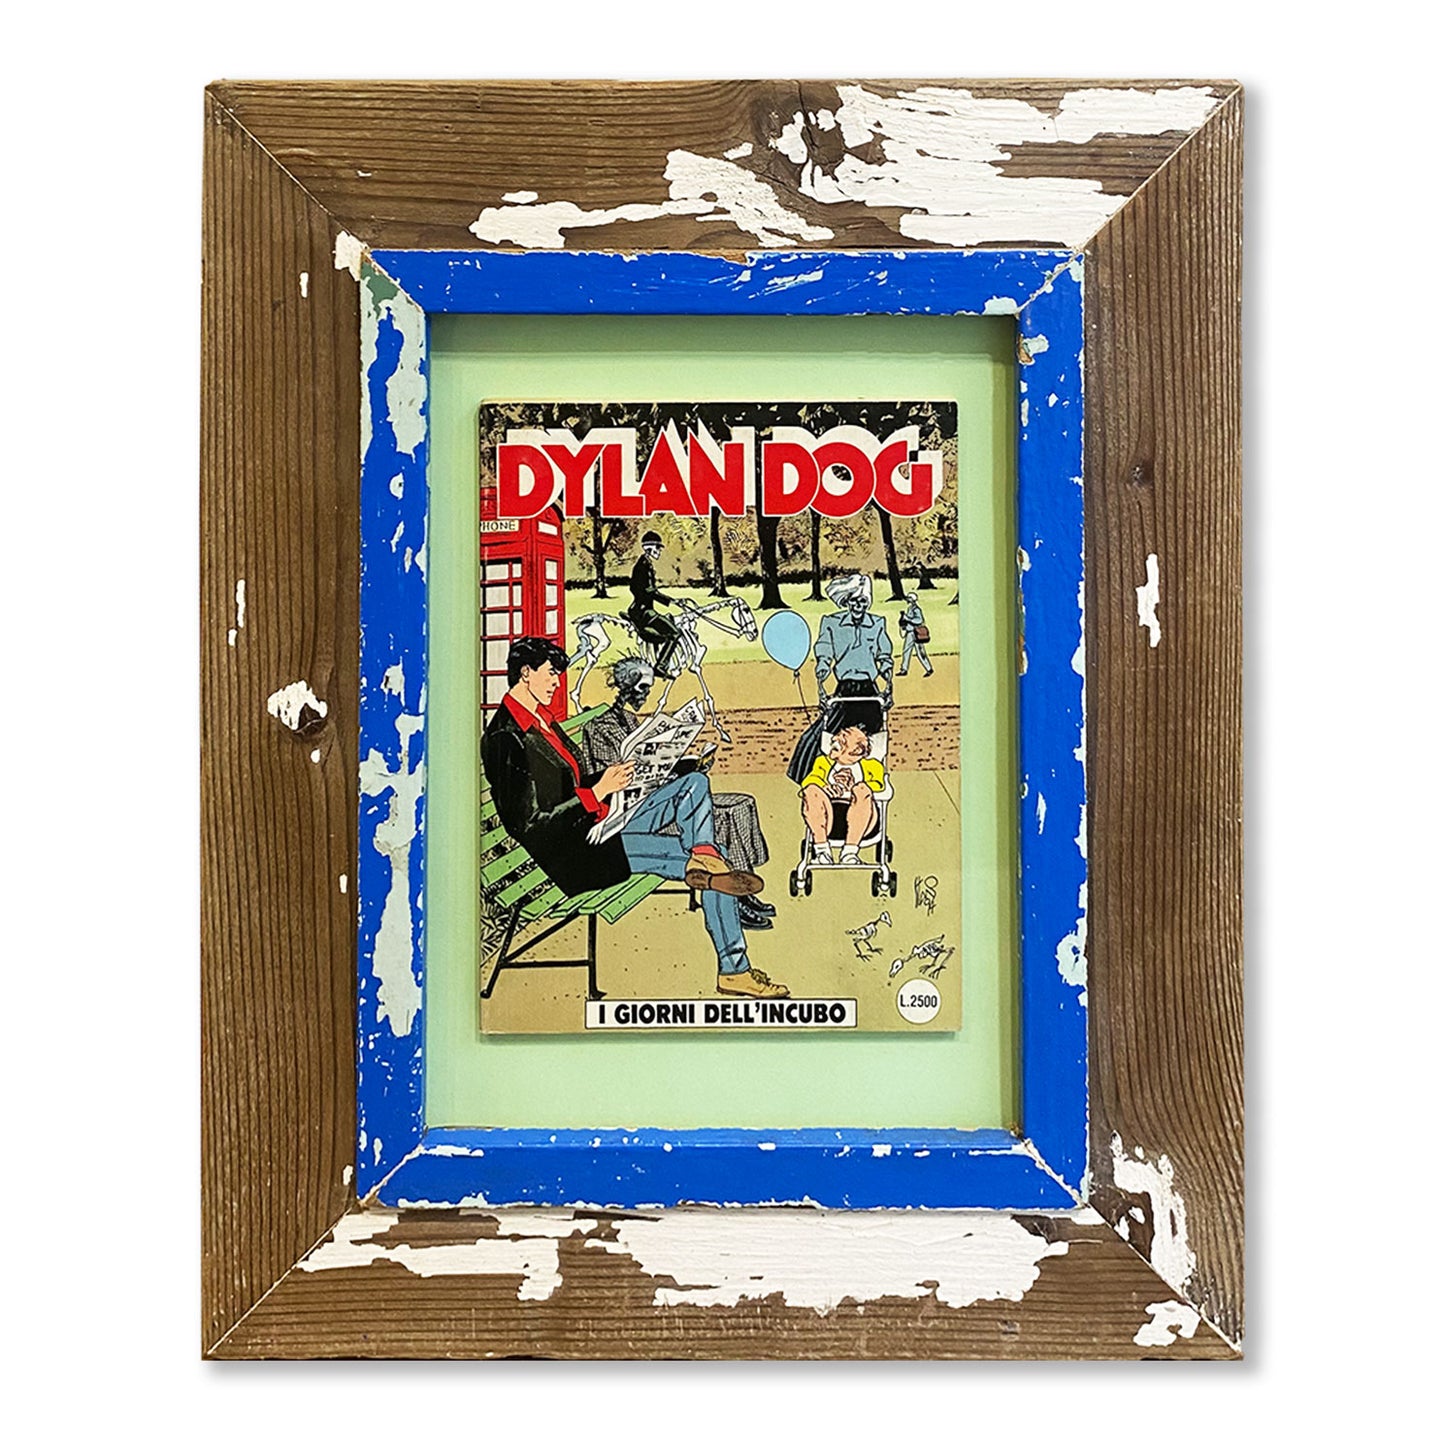 Cornice unica con fumetto Dylan Dog I giorni dell'incubo. Idea regalo per chi ama fumetti.